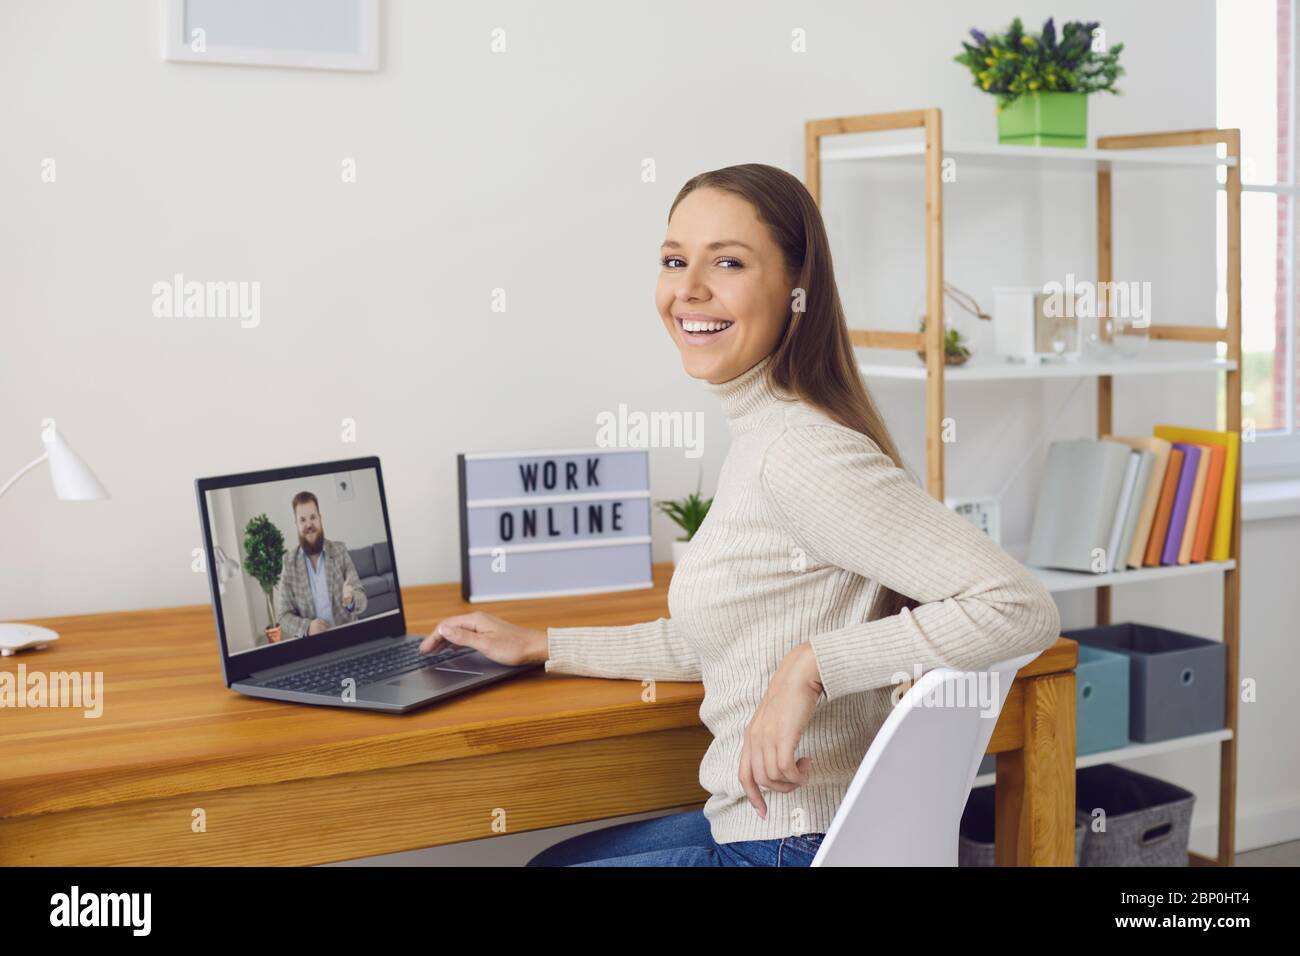 Lavoro online a casa. Una donna lavora a un tavolo utilizzando un computer portatile e parla con un partner tramite l'applicazione di chat per videochiamata a casa. Foto Stock